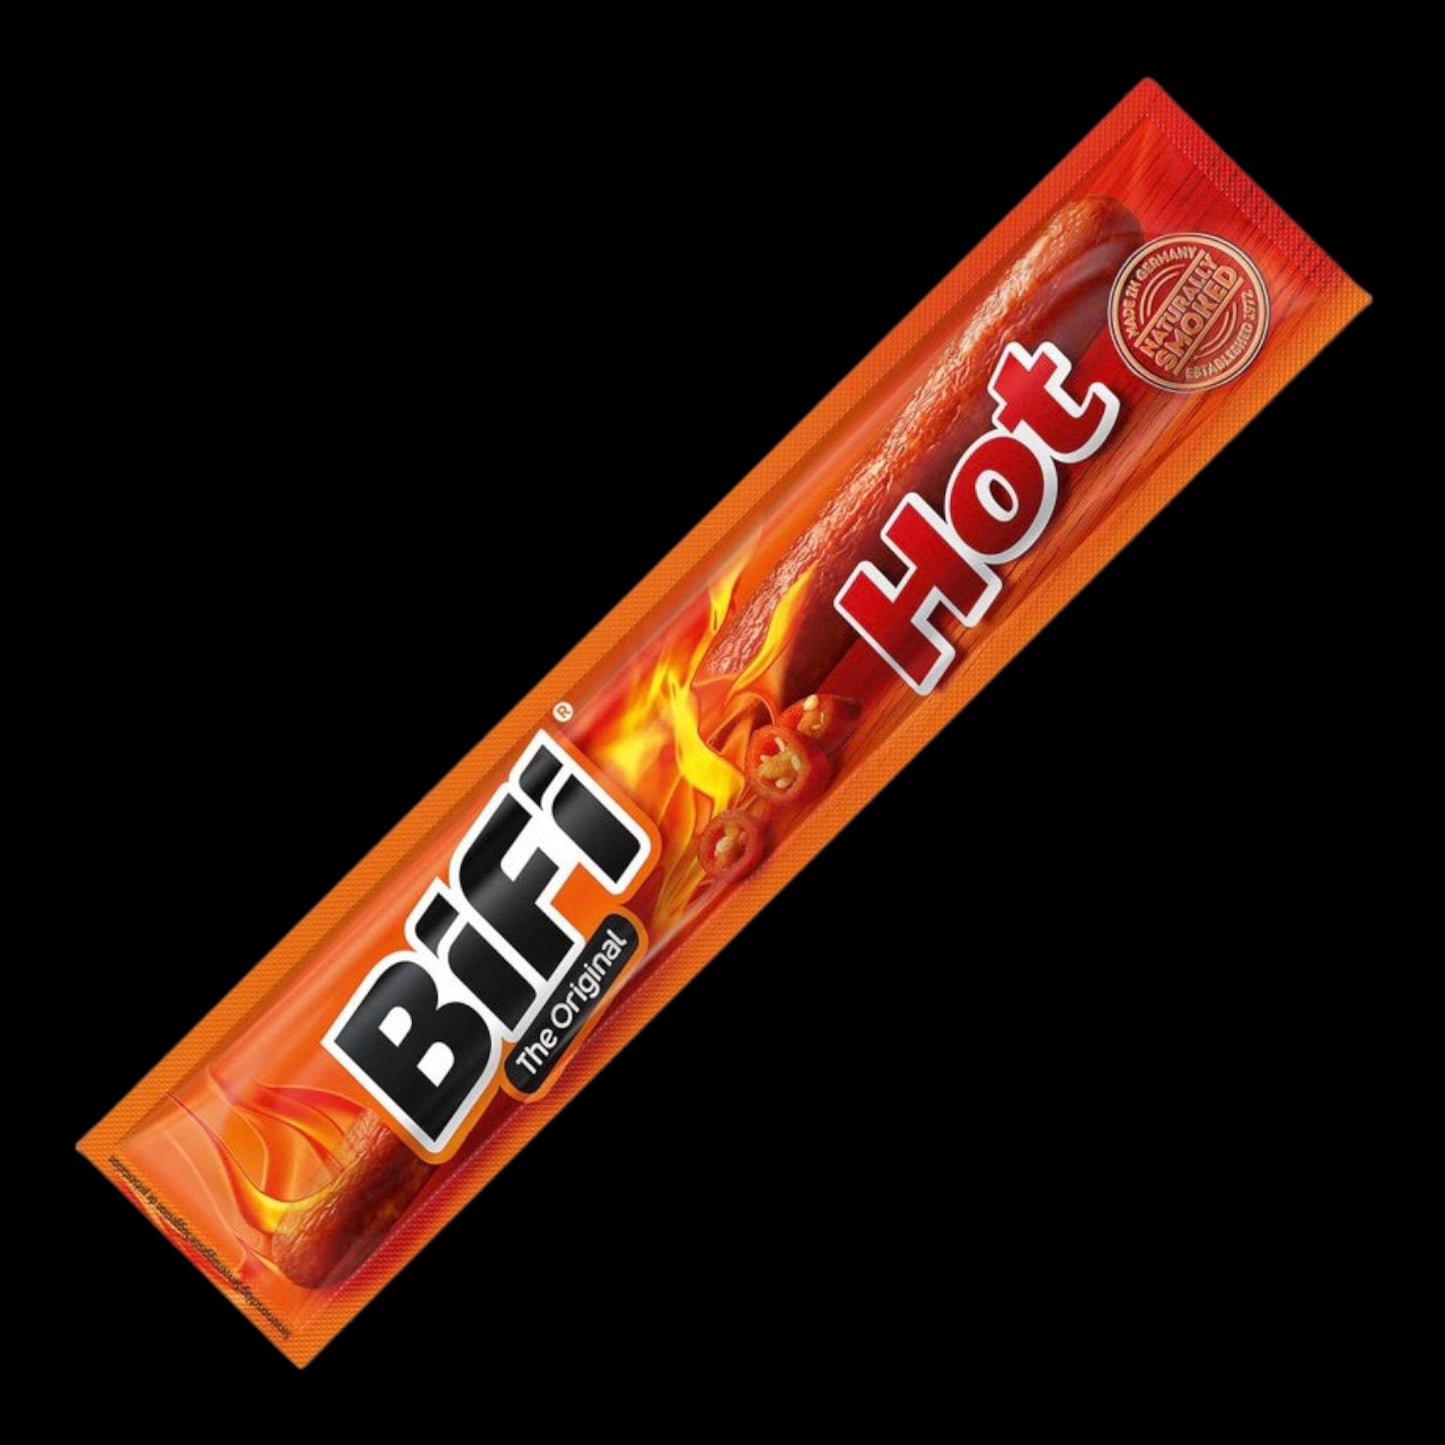 BiFi The Original Hot 22.5g